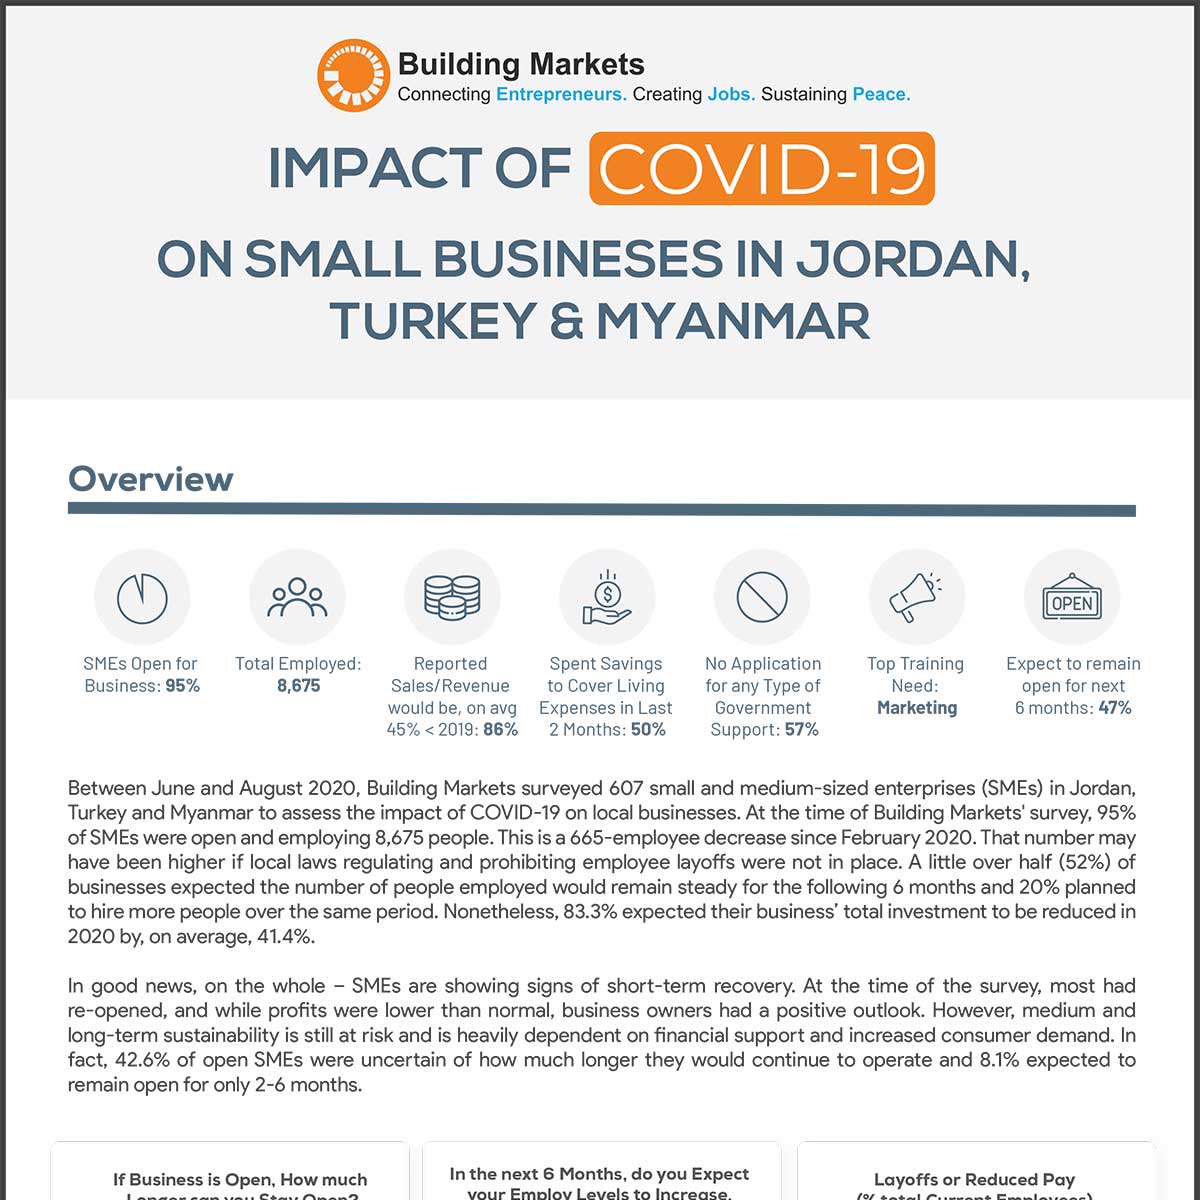 تأثير COVID-19 على الشركات الصغيرة والمتوسطة في الأردن وتركيا وميانمار – موجز بحثي (2020)